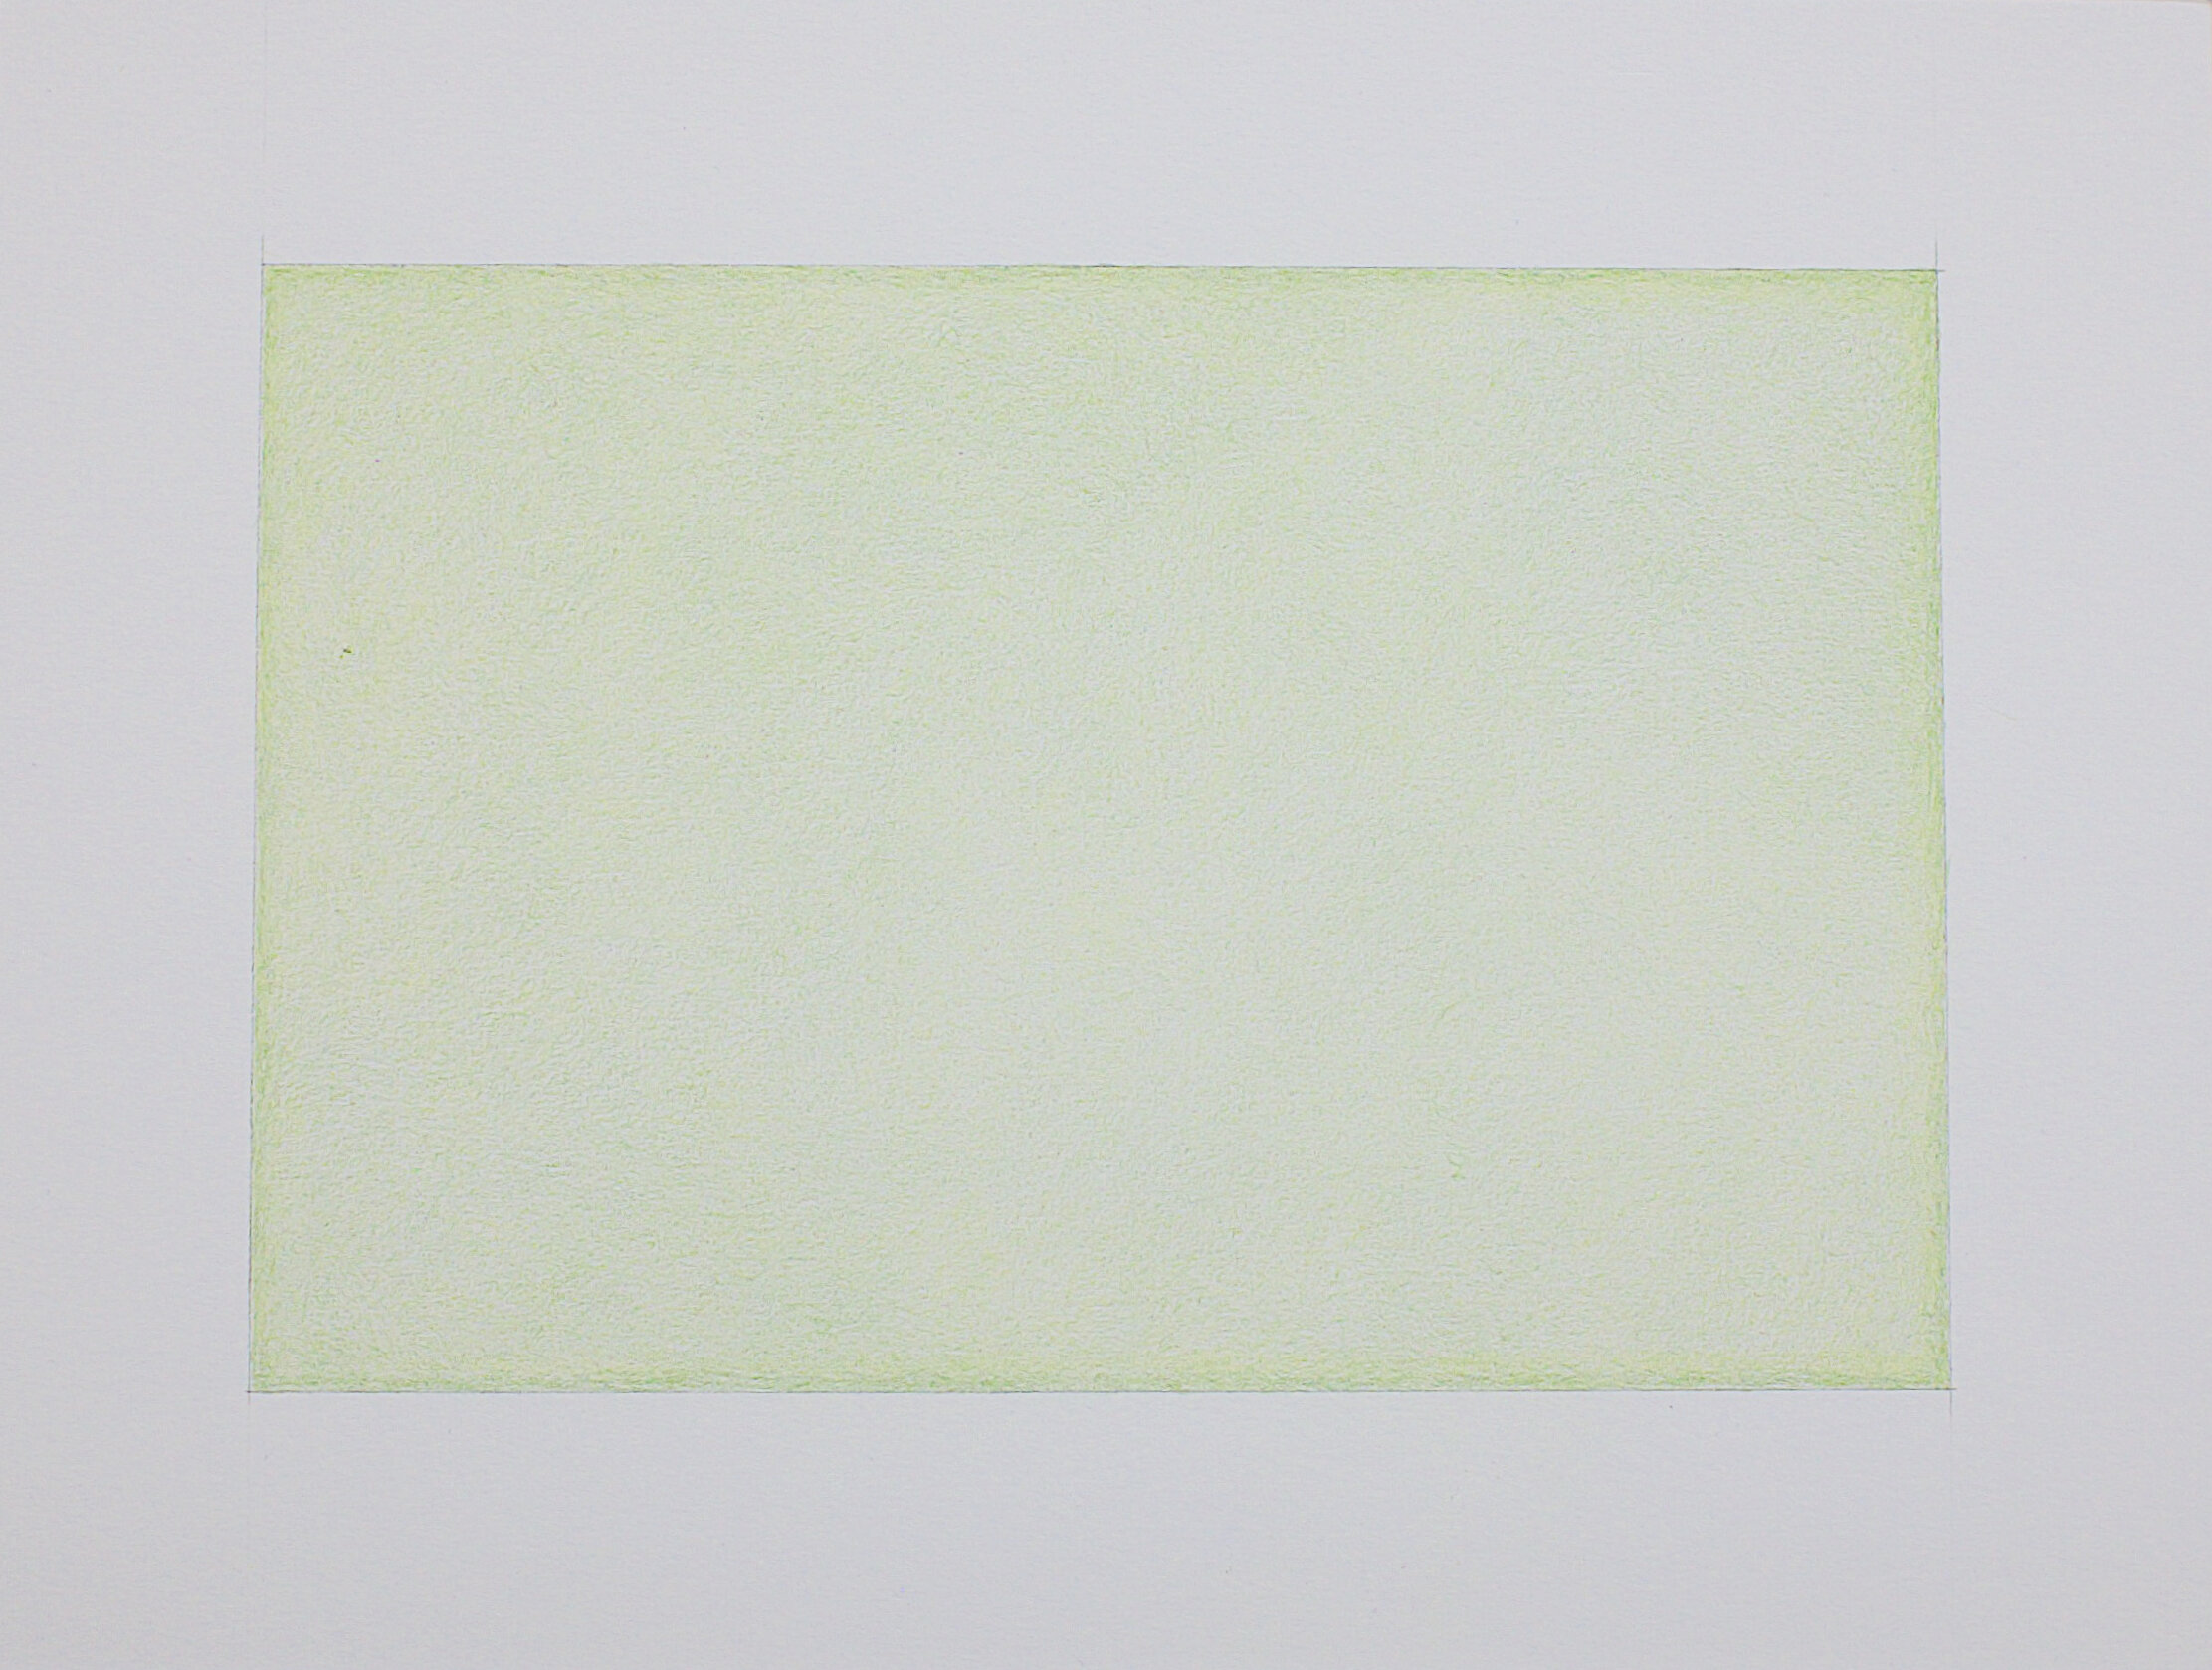  Zeichnung Nr. F01/2021 - 18 x 12 cm  - Farbstift auf Papier - im Passepartout 